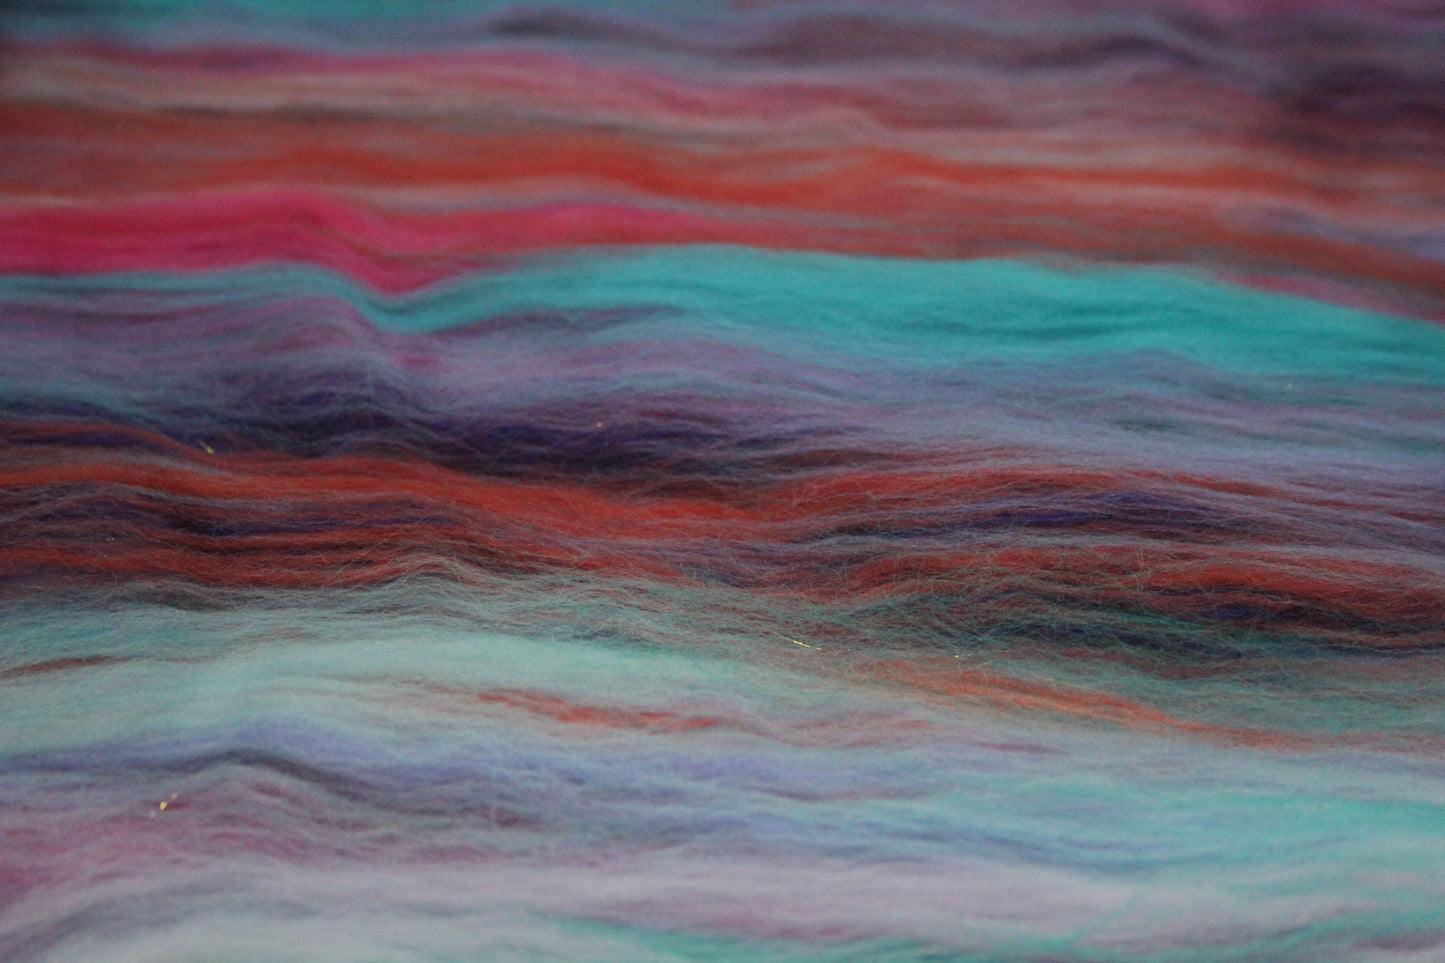 Merino Art Batt  - Pink Orange Purple Turquoise - 123 grams 4.3 oz - Wool for felting, spinning and weaving